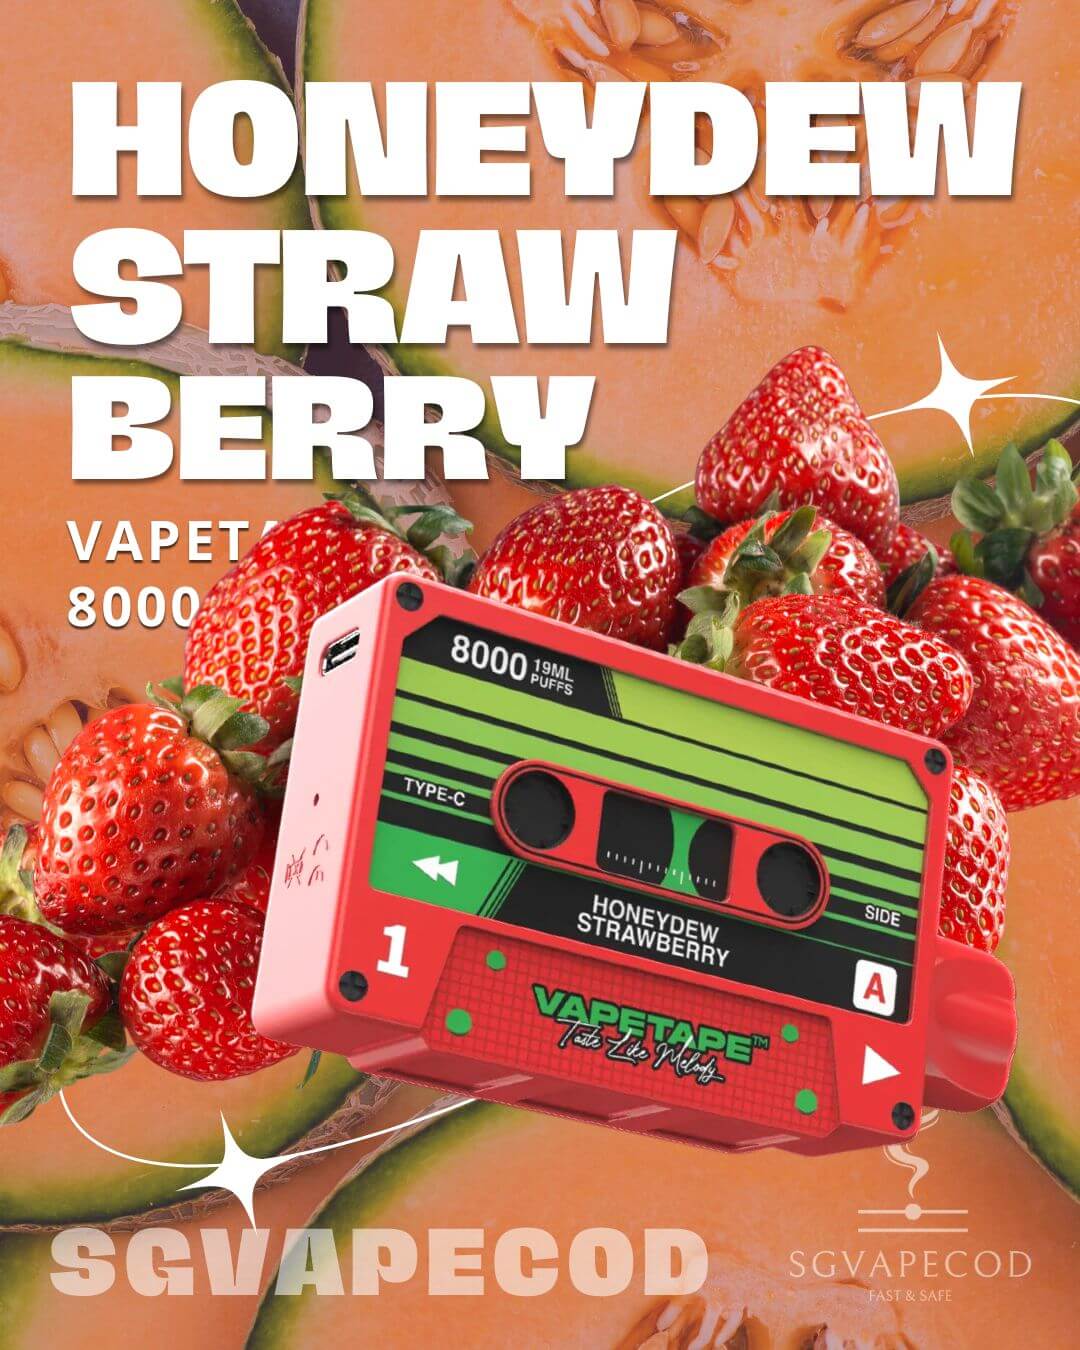 Vapetape-8000-Honeydew-Strawberry-(SG VAPE COD)